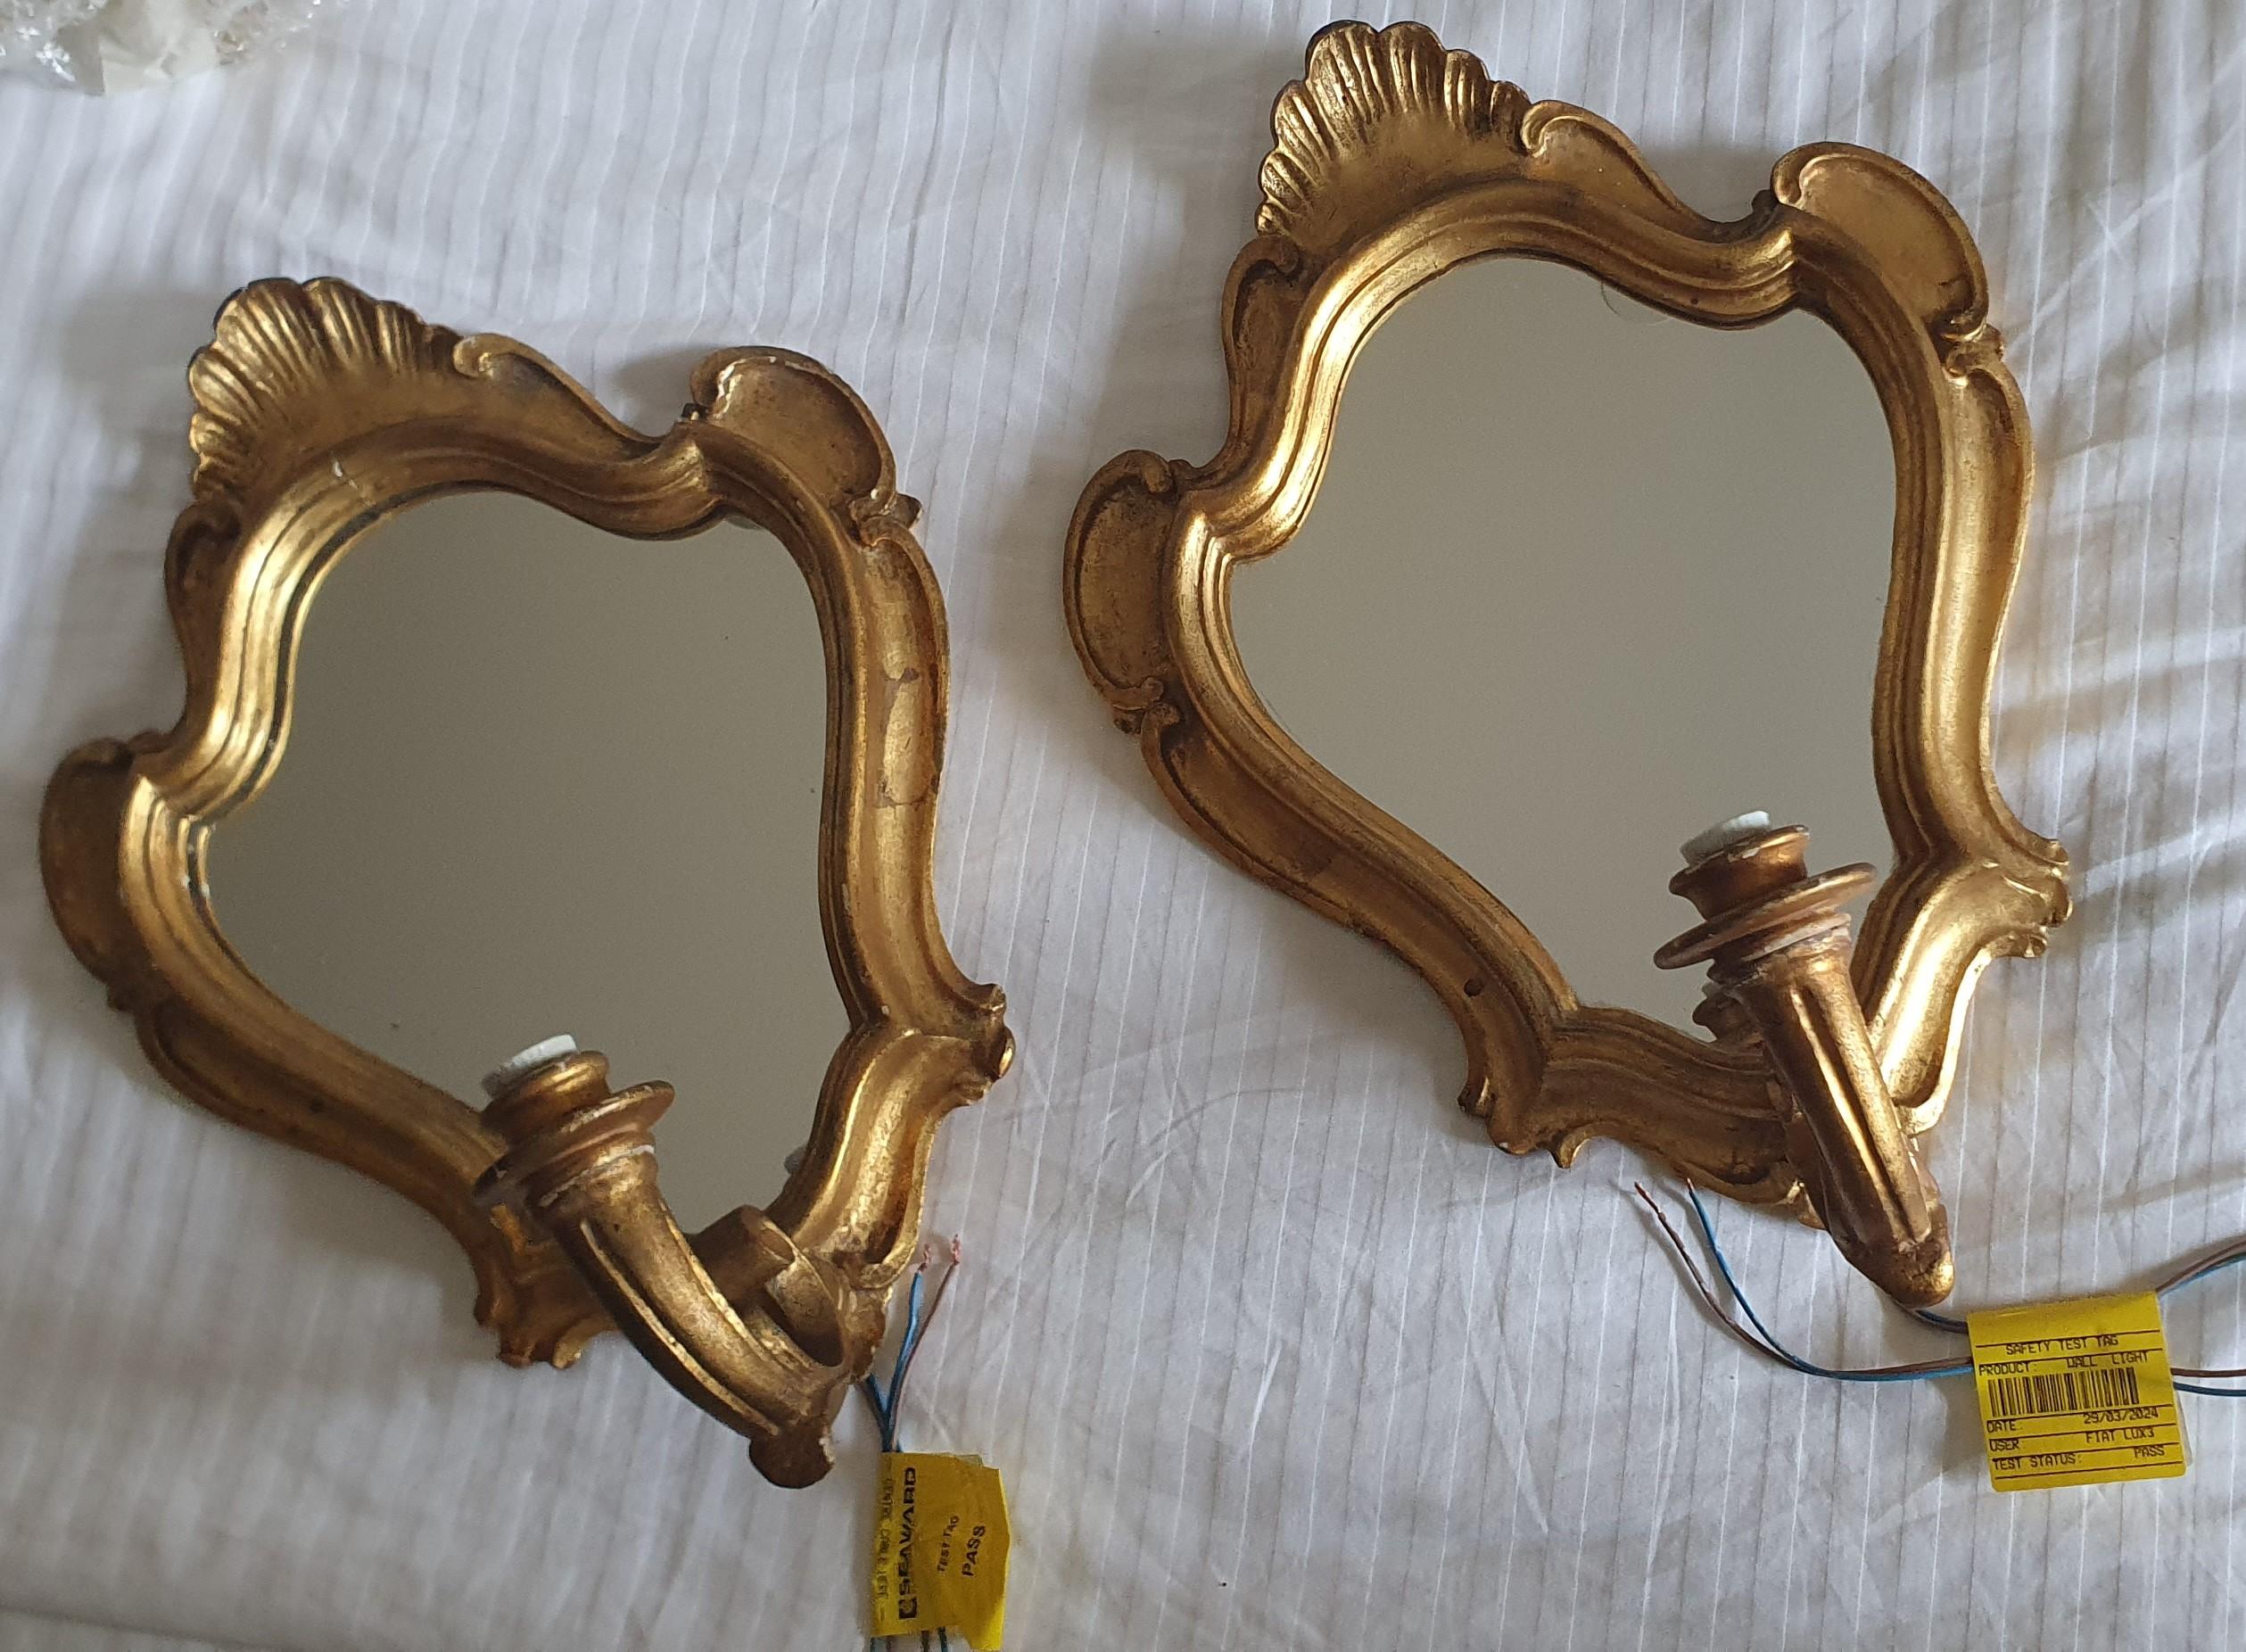 Nous présentons à la vente une superbe paire d'appliques murales Girandole italiennes des années 1940 de style baroque, sculptées à la main et ornées de miroirs dorés à l'huile. 

Ces magnifiques appliques sculptées ont un cadre de 3 cm de